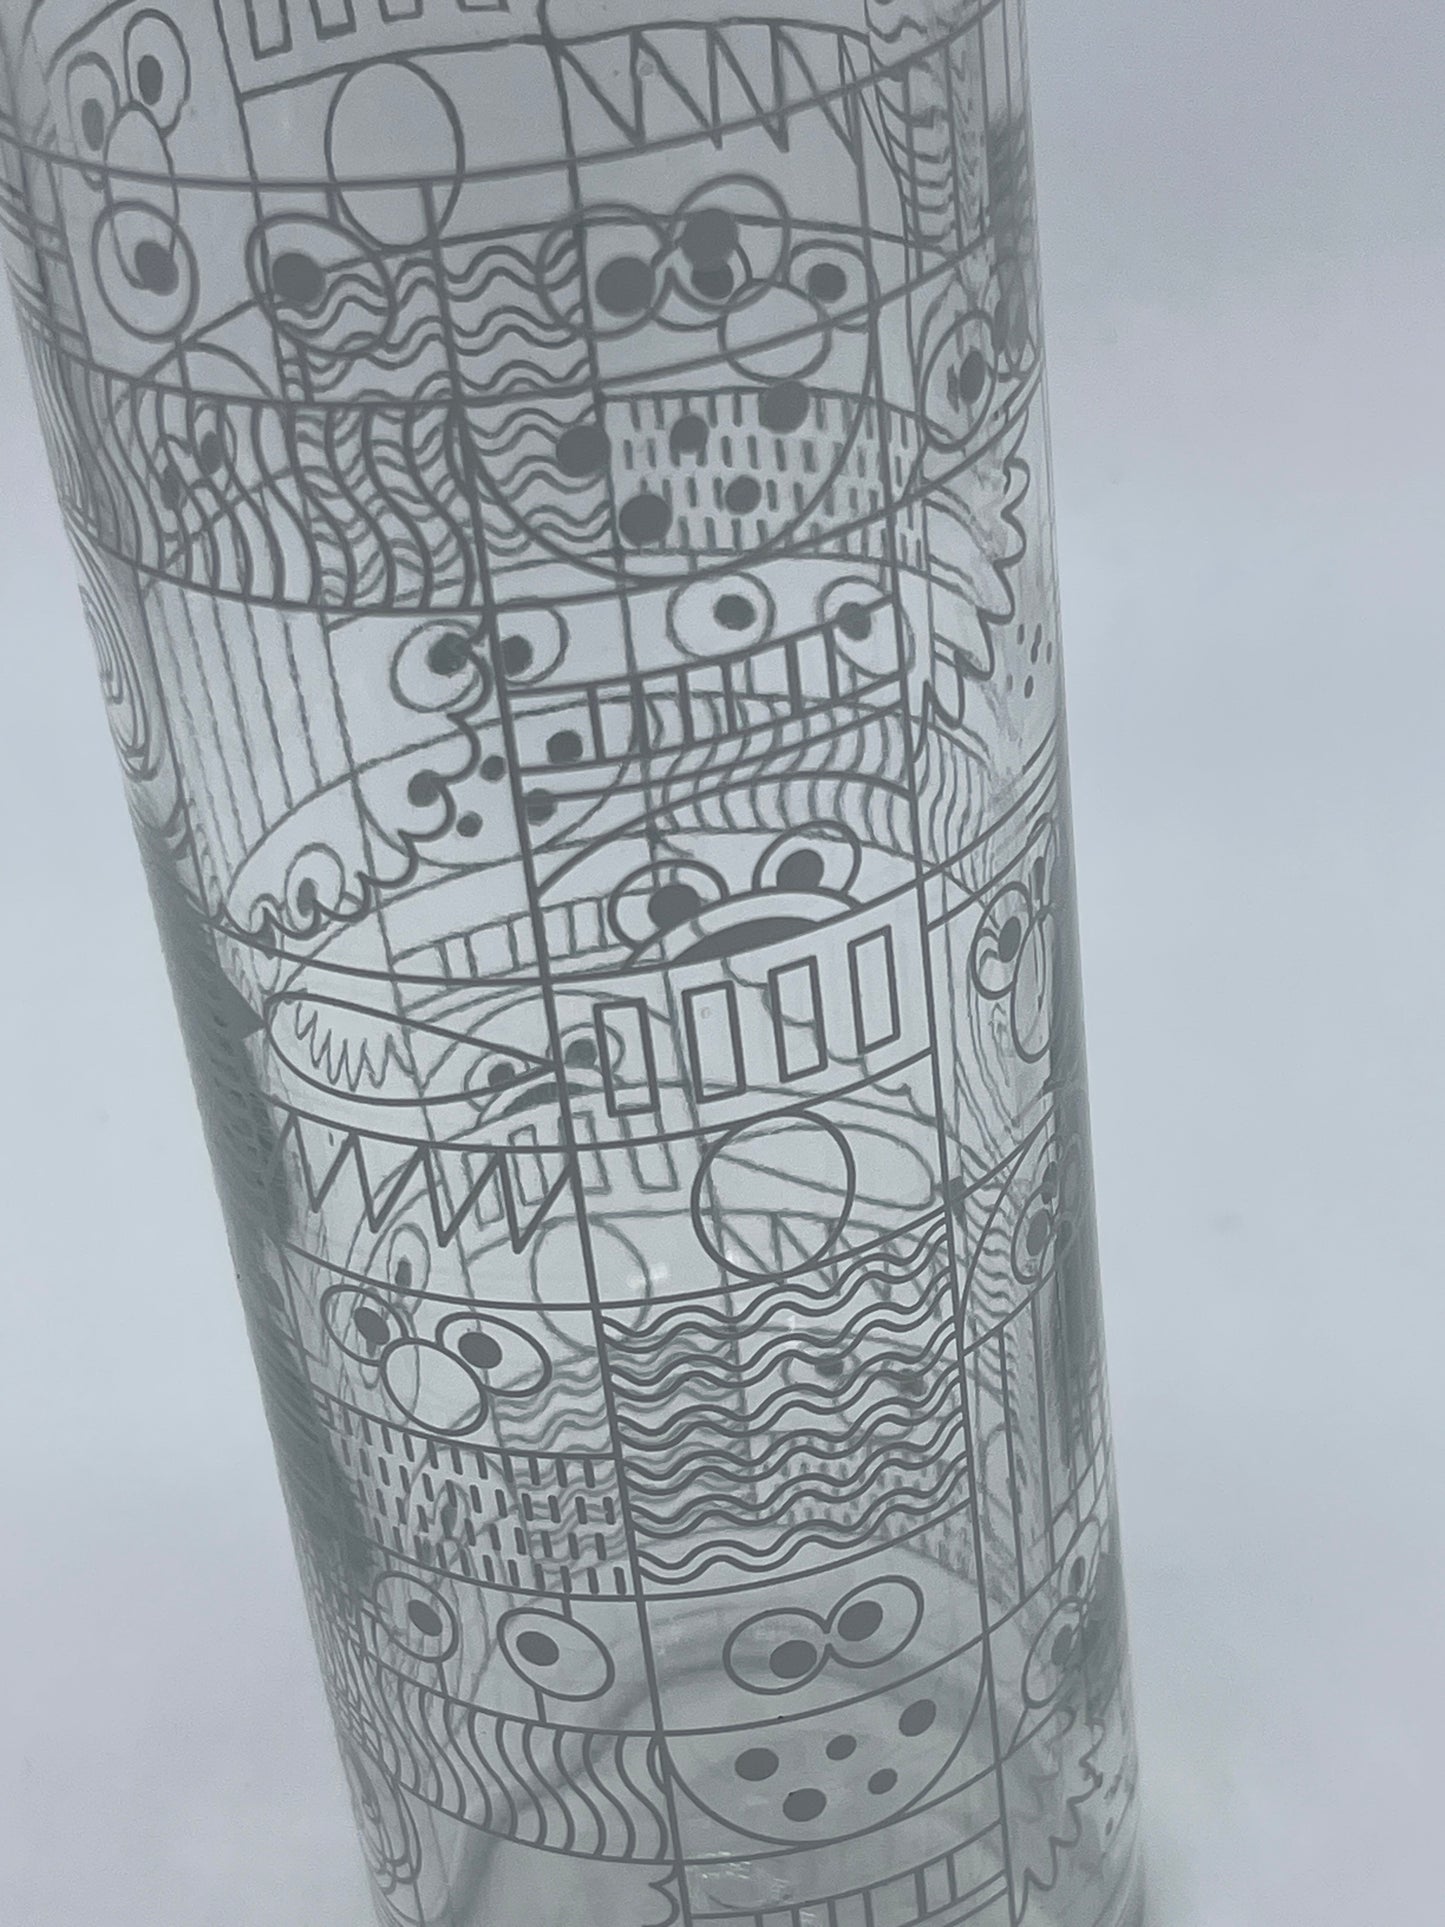 Sesamstraße "Trinkflasche aus Glas 500ml" 50 Jahre Sesame Street (2022)